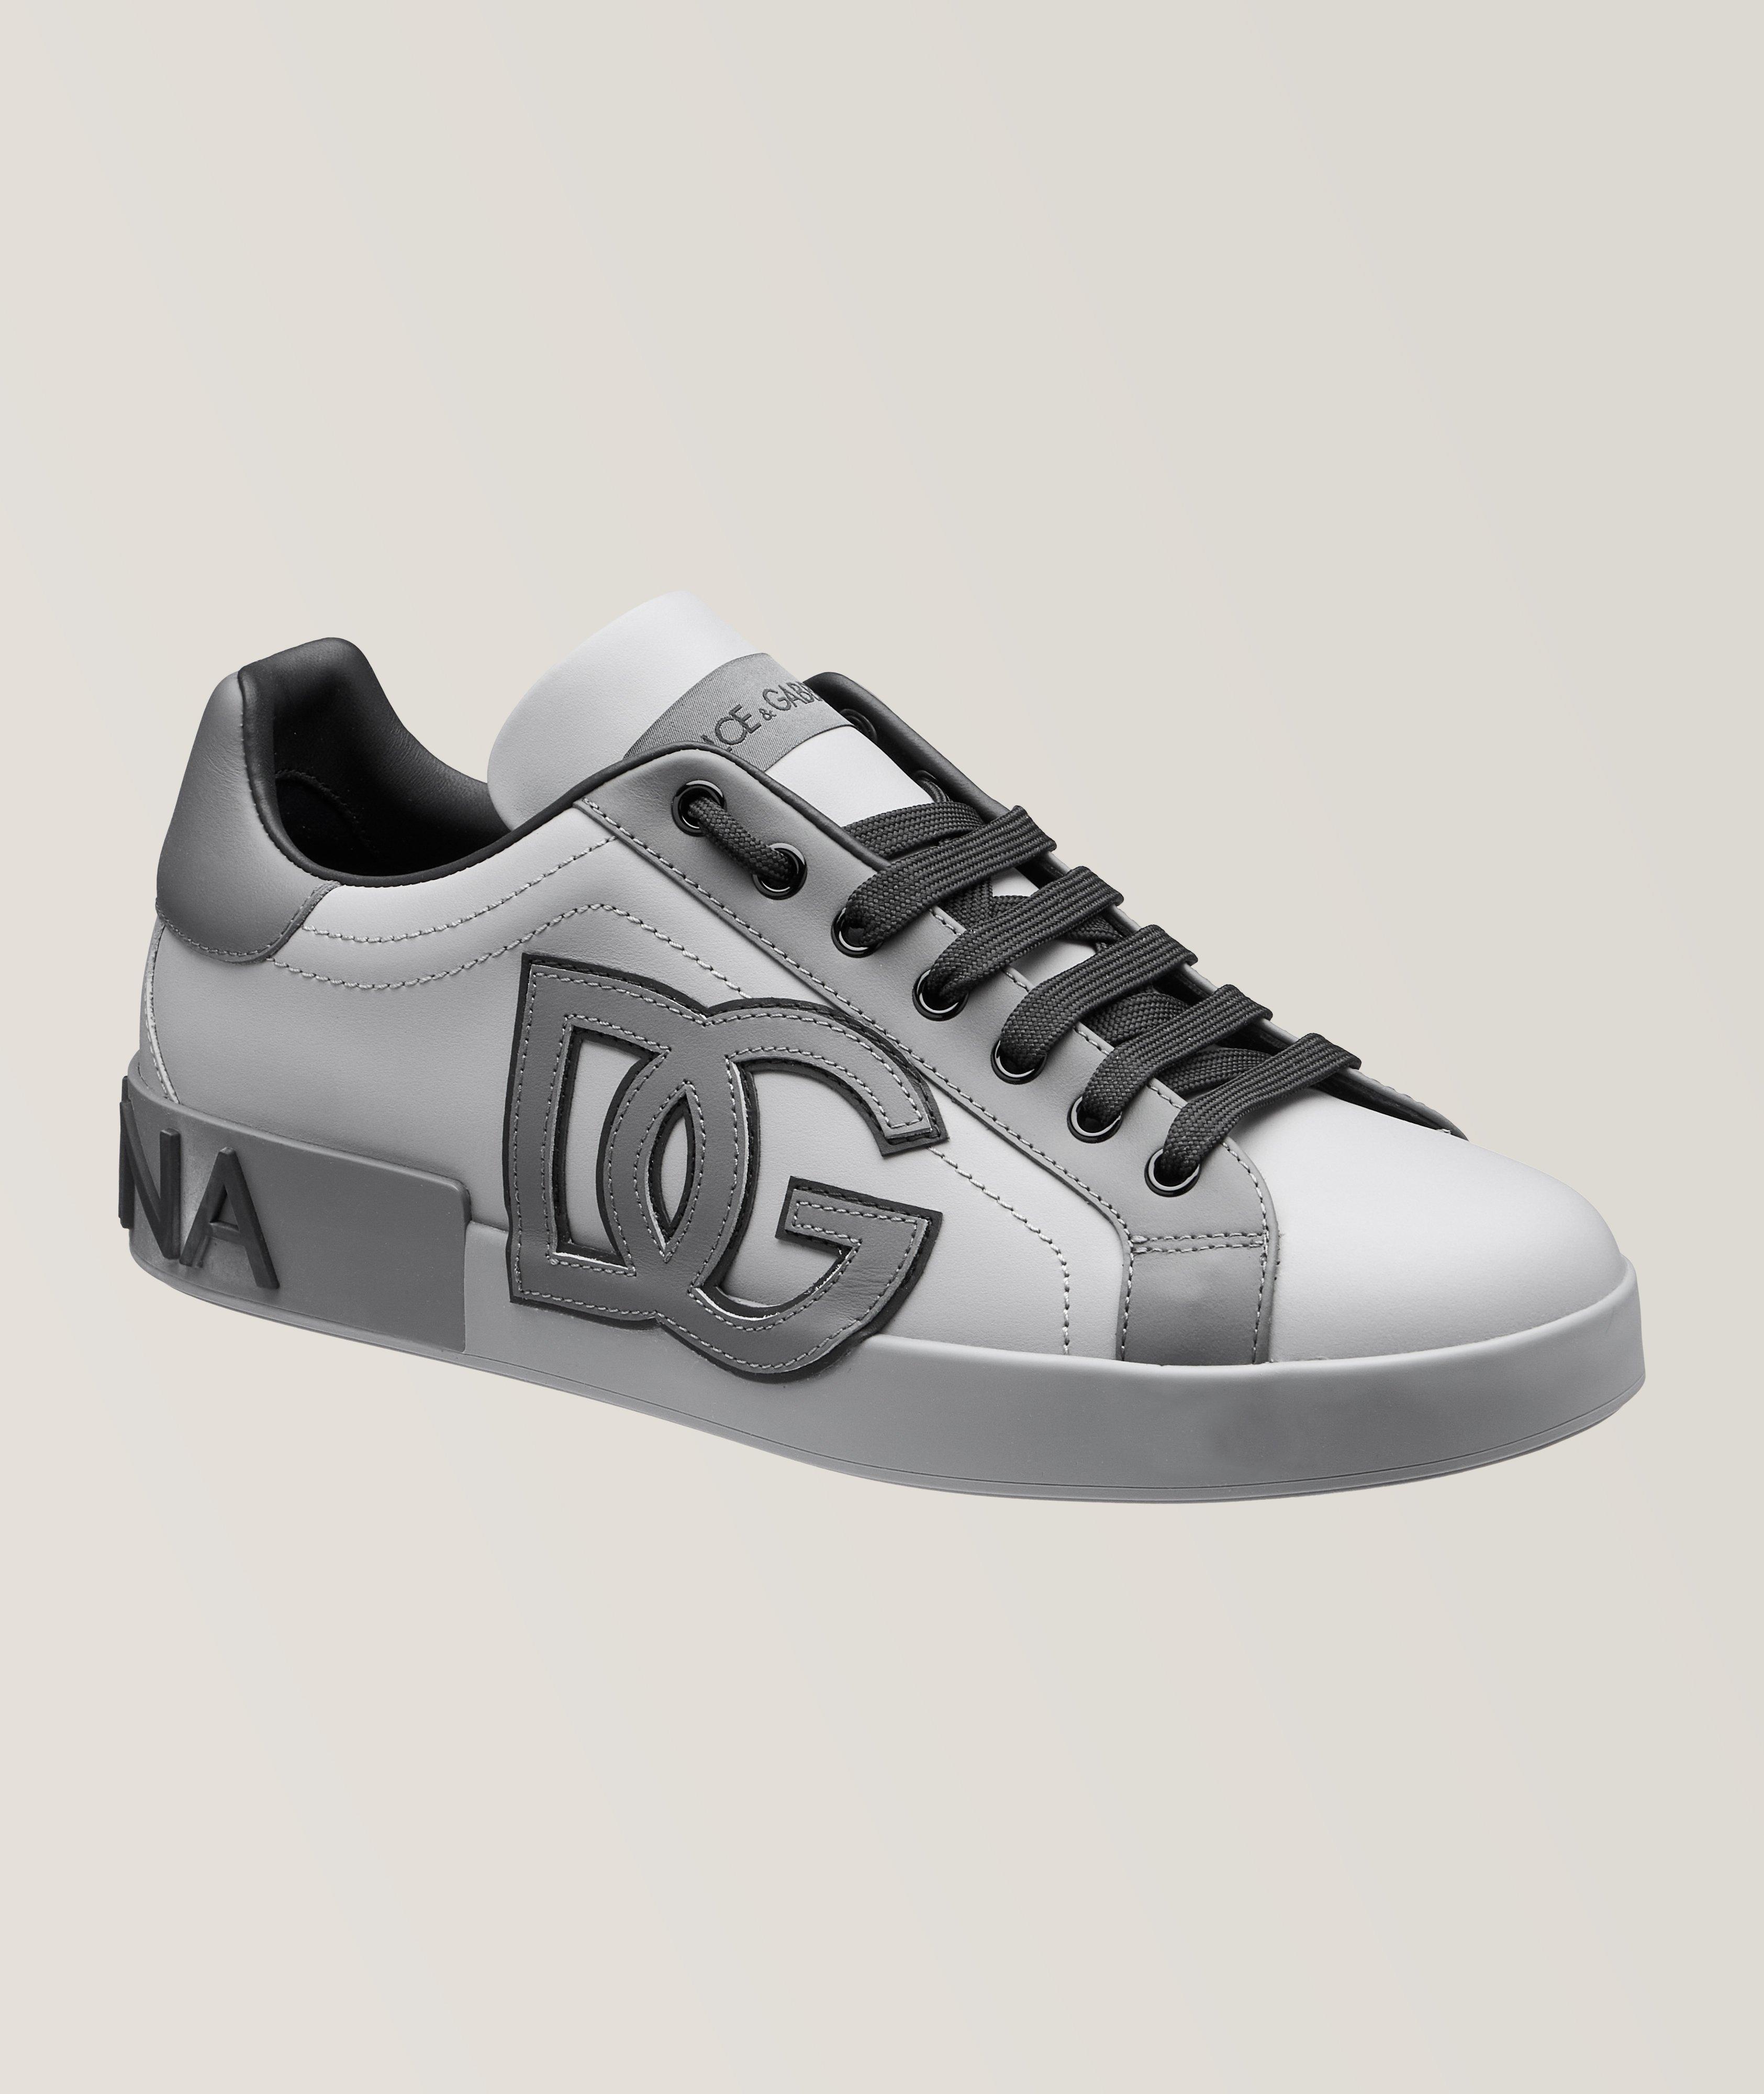 Portofino Nappa Leather Sneakers